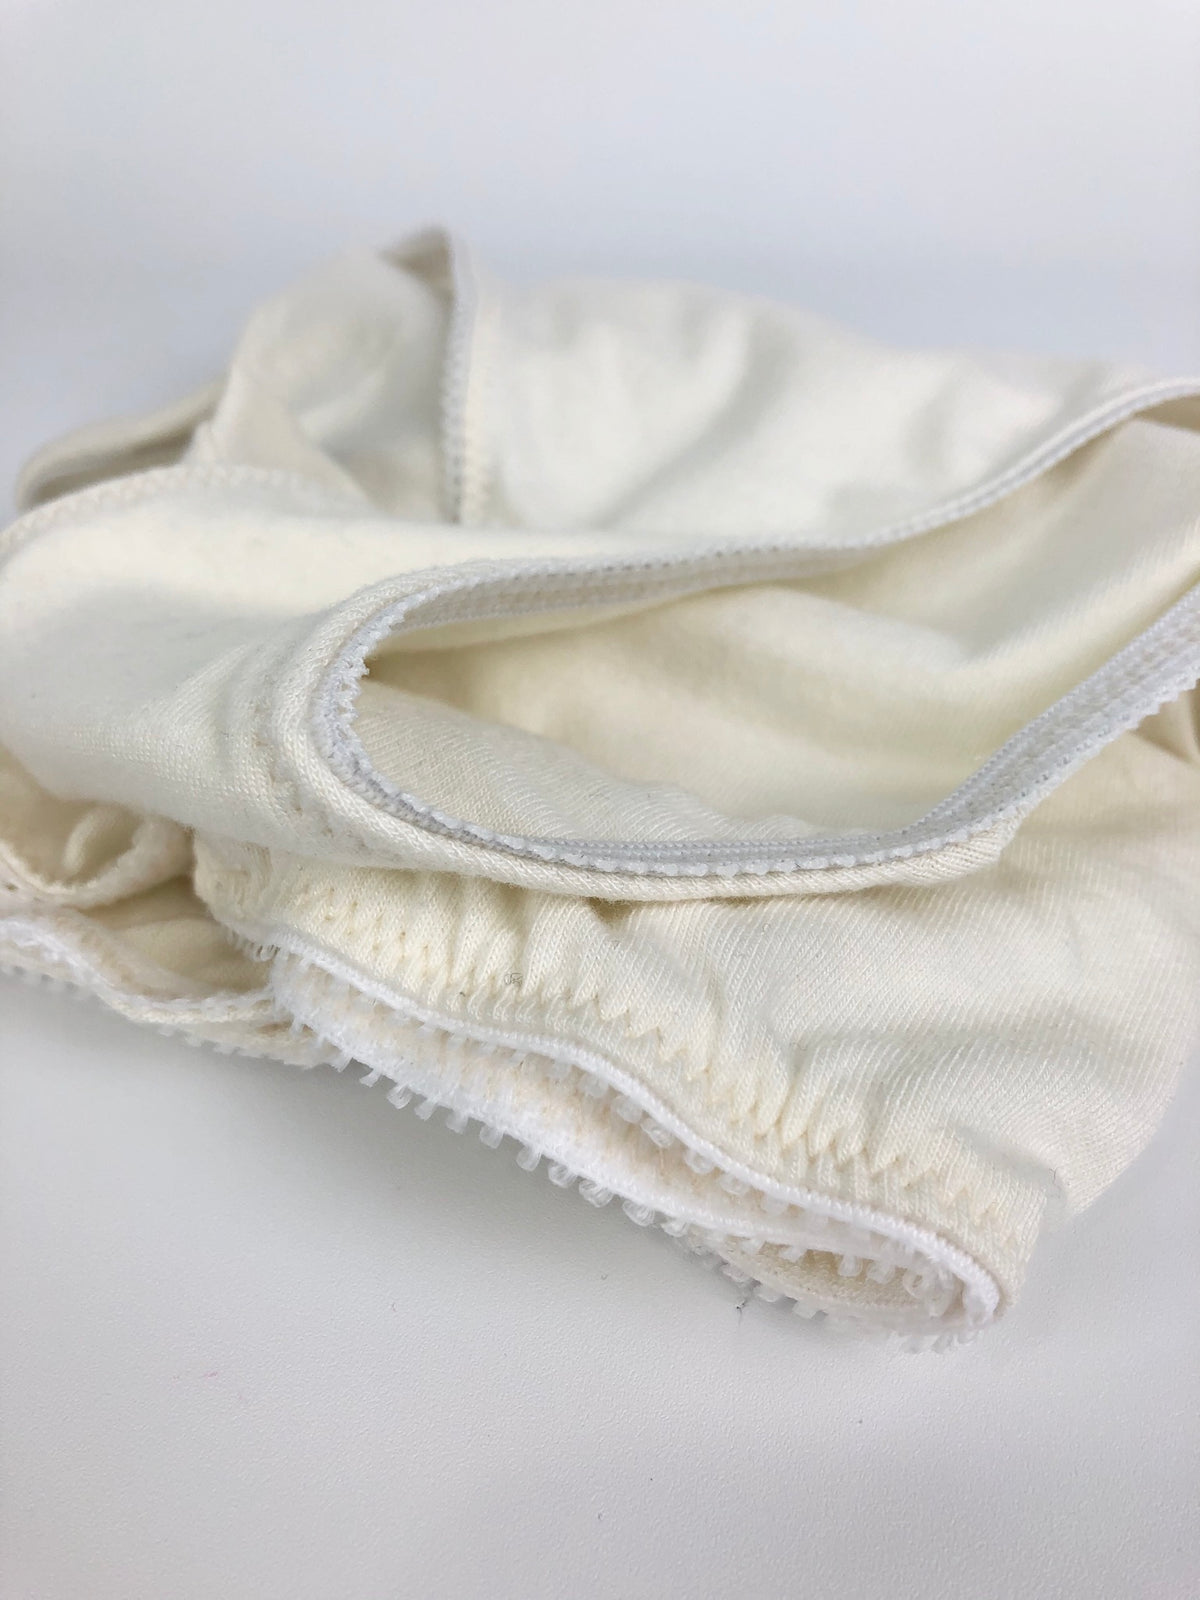 Men's Sack Pouch Boxer Brief Underwear 017 PDF Sewing Pattern